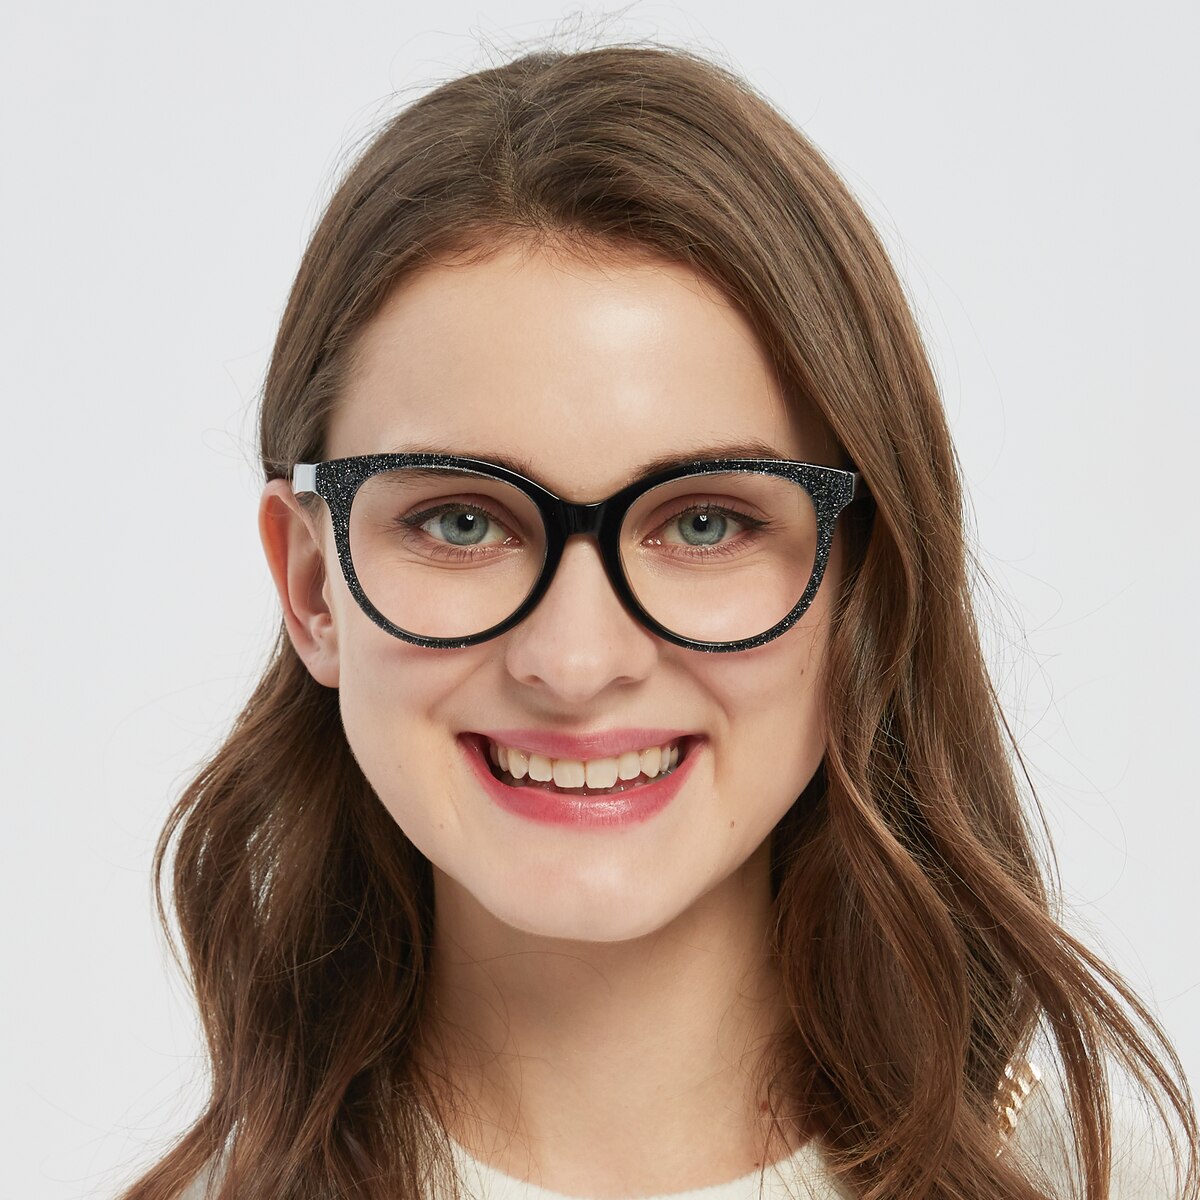 Lindsay Cat Eye Black/Silver Full-Frame Acetate Eyeglasses | GlassesShop